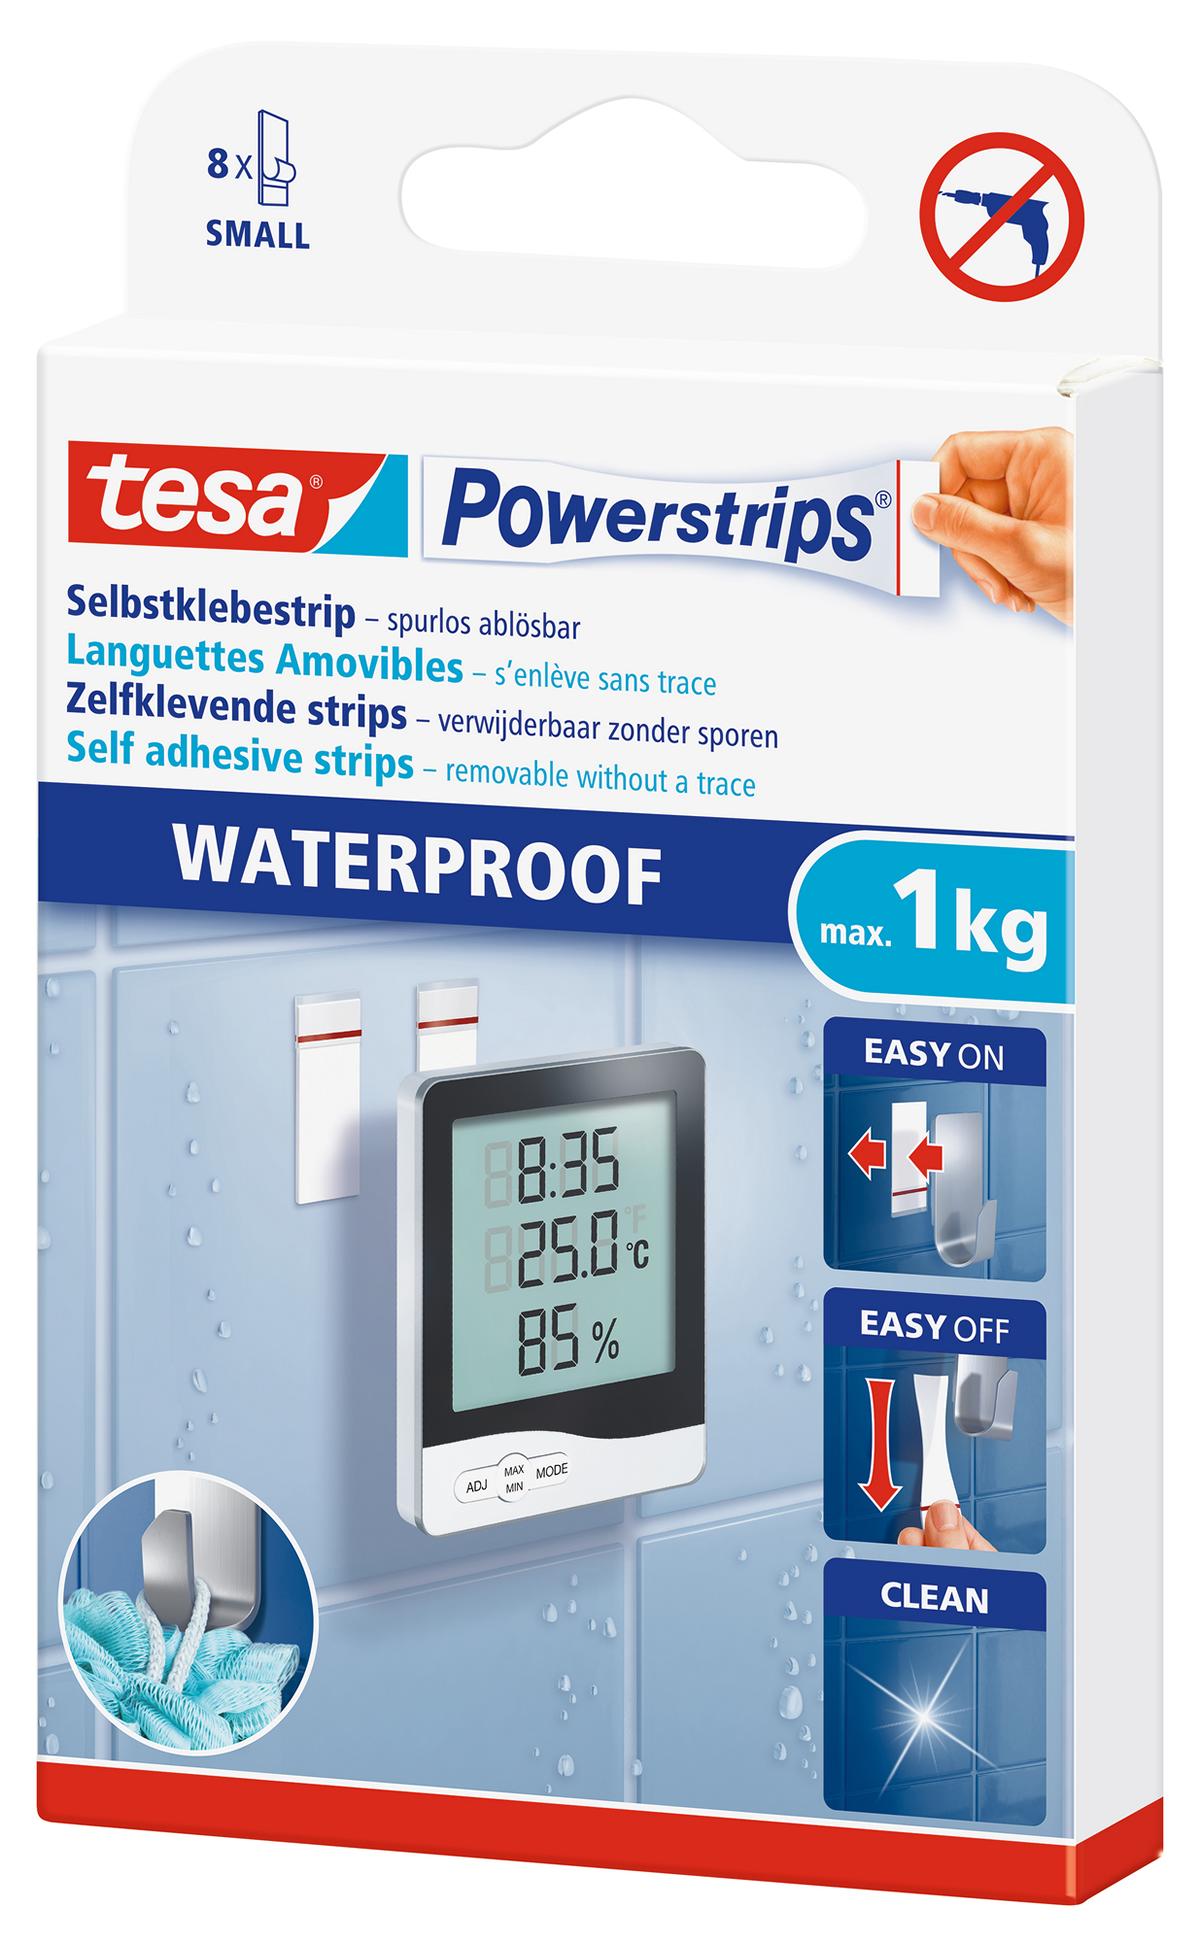 tesa Powerstrips Selbstklebestrip Waterproof Small